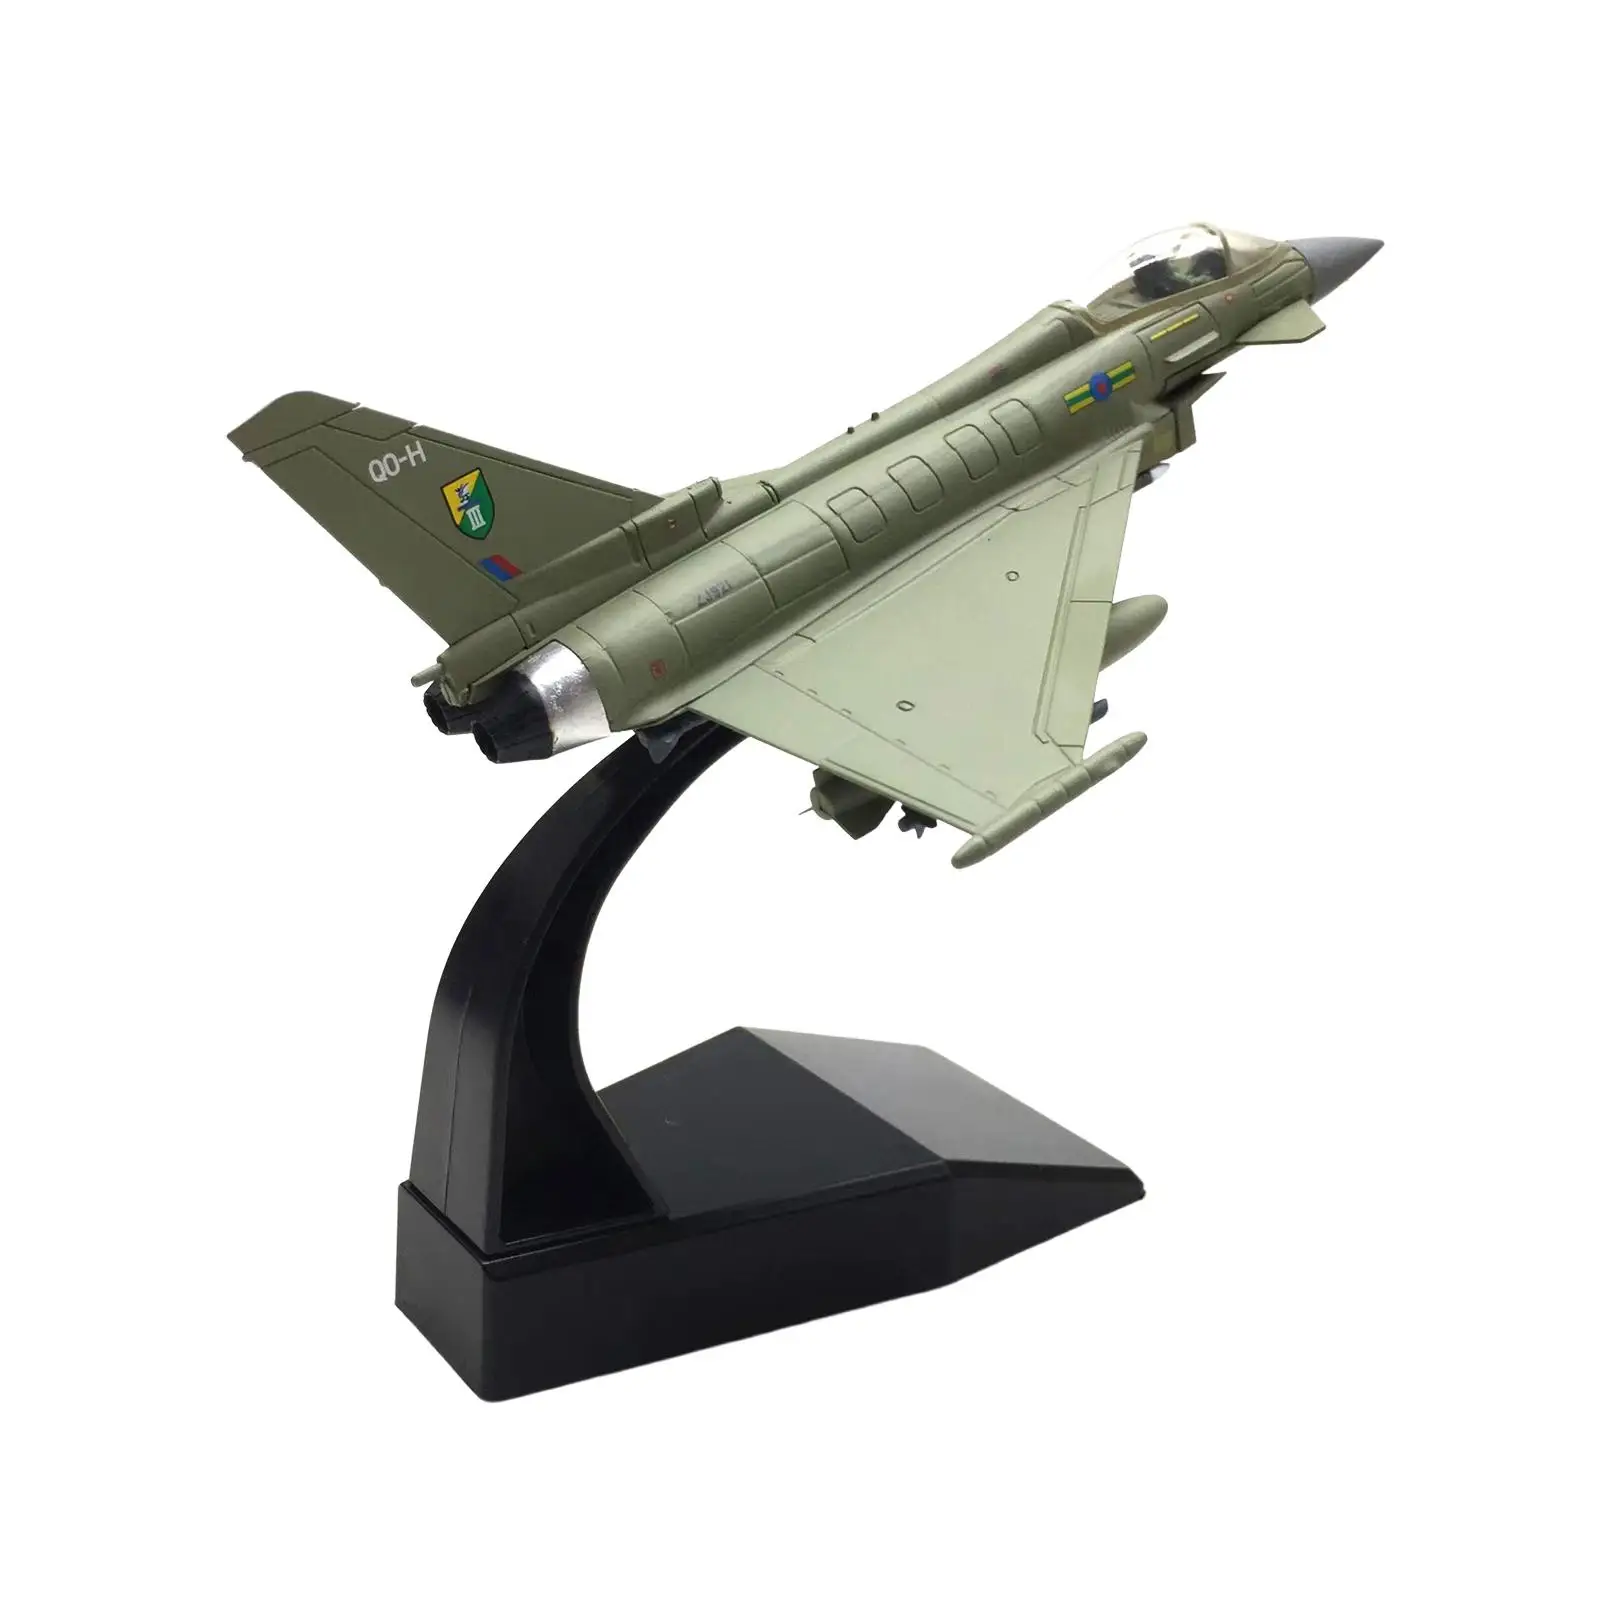 Демонстрационен модел на самолета Ef 2000 Fighter, направен под натиск . ' - ' . 0